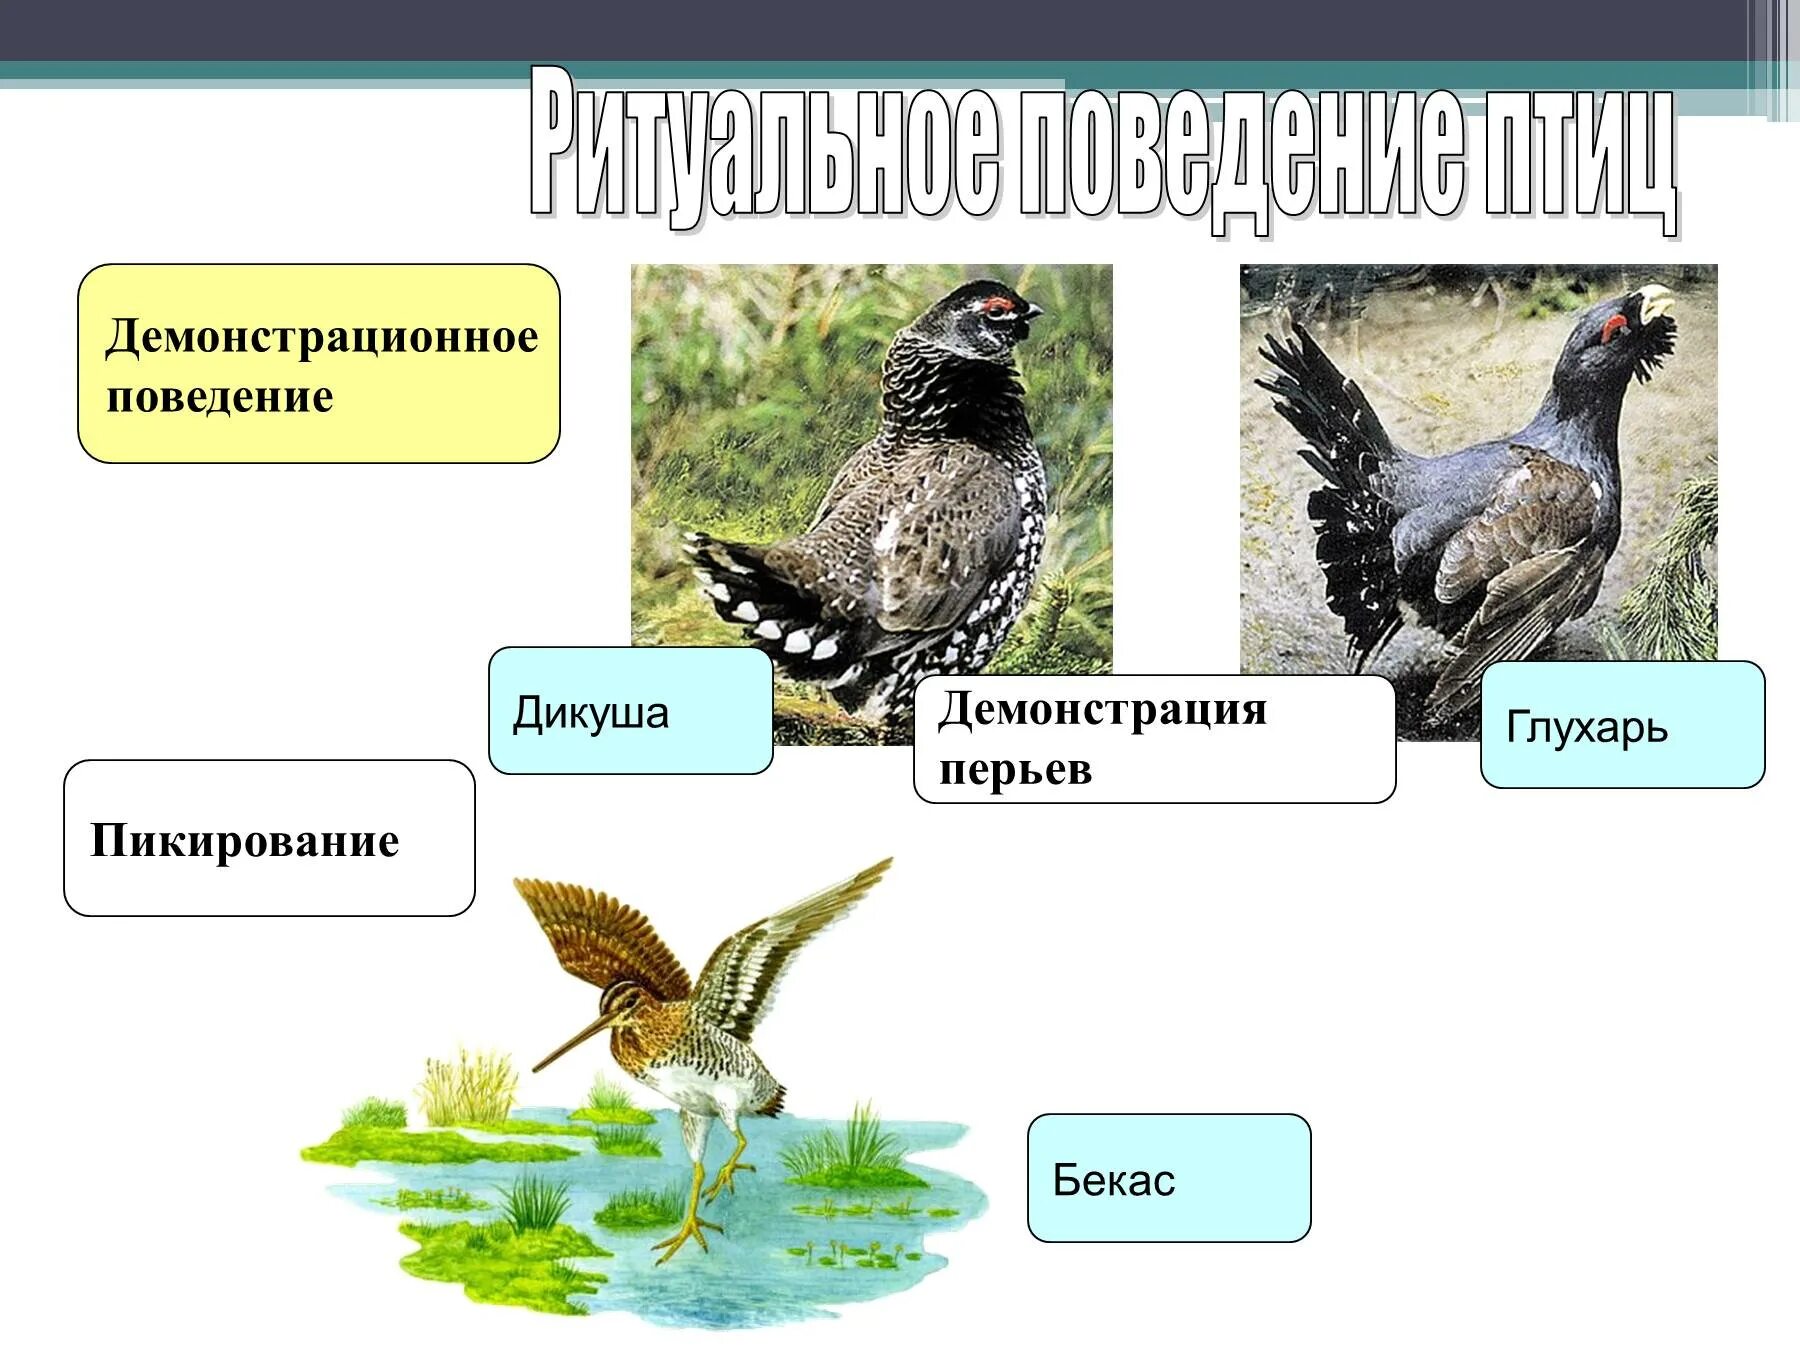 Демонстрационное поведение птиц. Биология размножение птиц. Класс птицы поведение. Размножение птиц 7 класс биология.